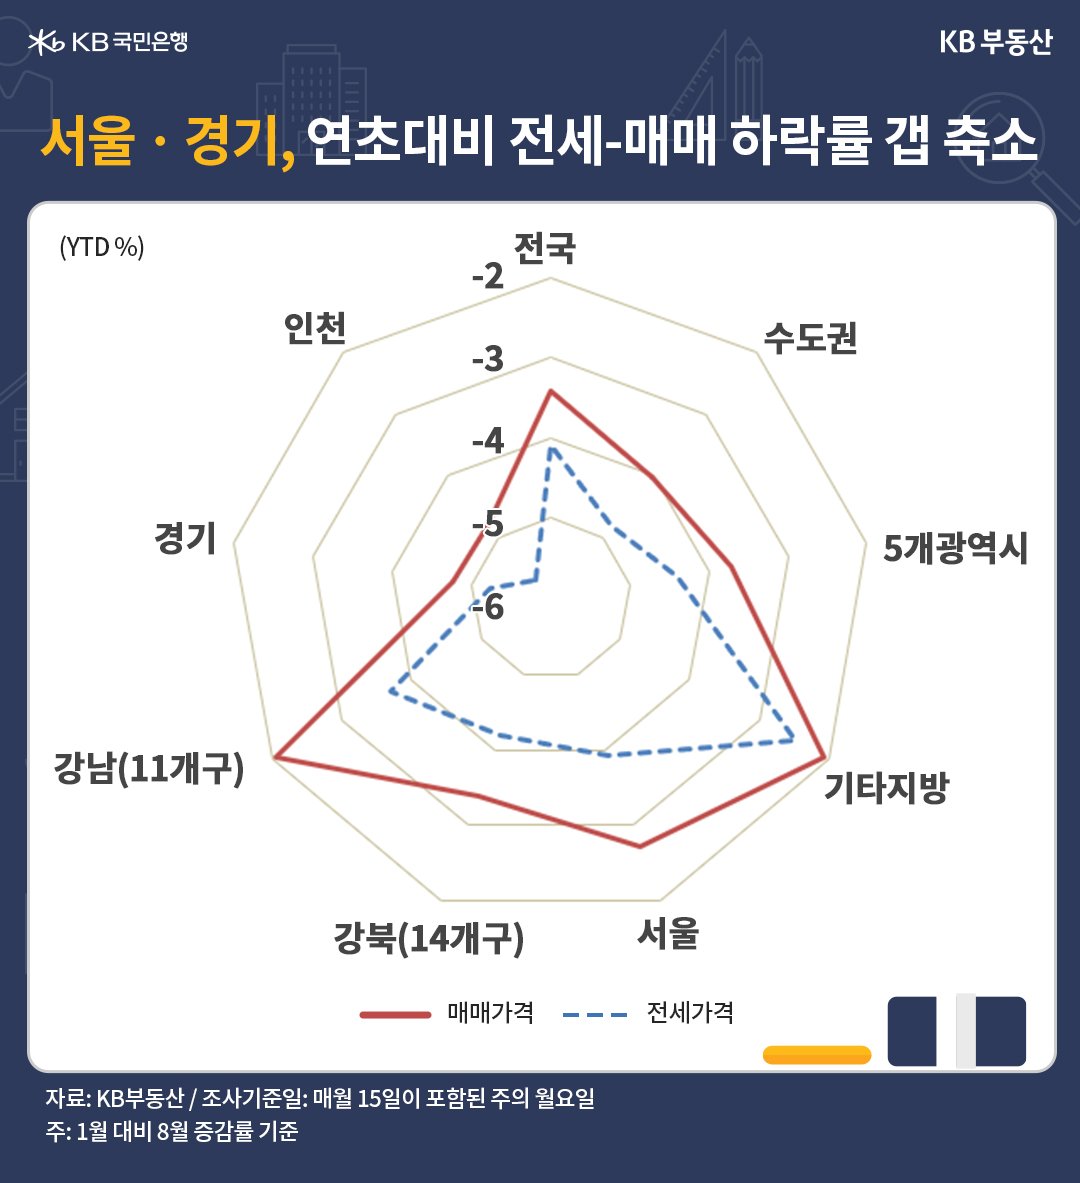 서울과 경기도의 연초대비 '전세-매매' 하락률 갭이 축소됨을 나타냄, 전세가격 그래프가 매매가격 그래프 안쪽에 존재하며 갭 차이를 나타내고 있음.